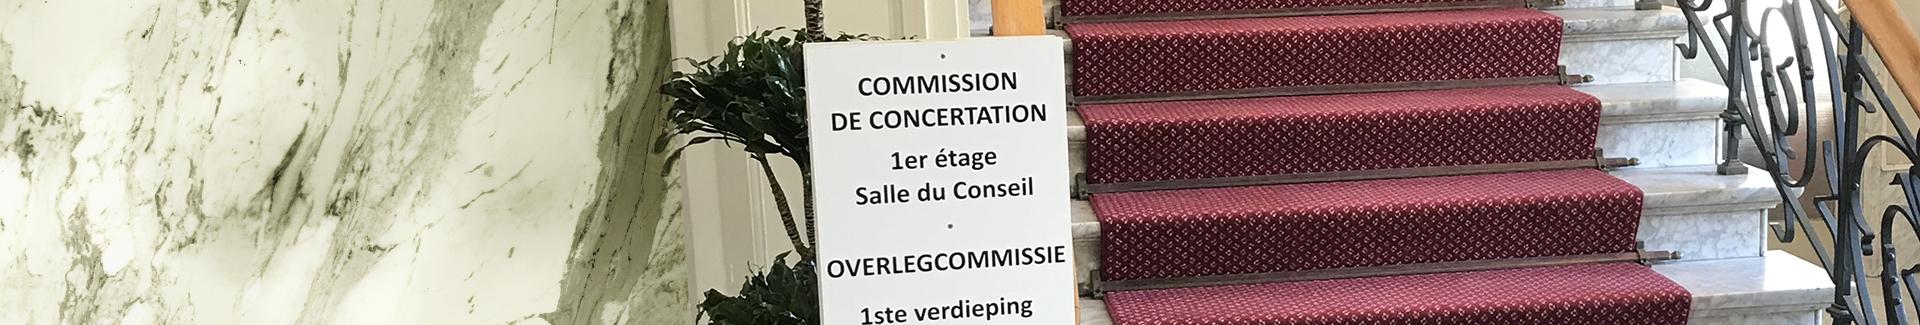 Commission de concertation